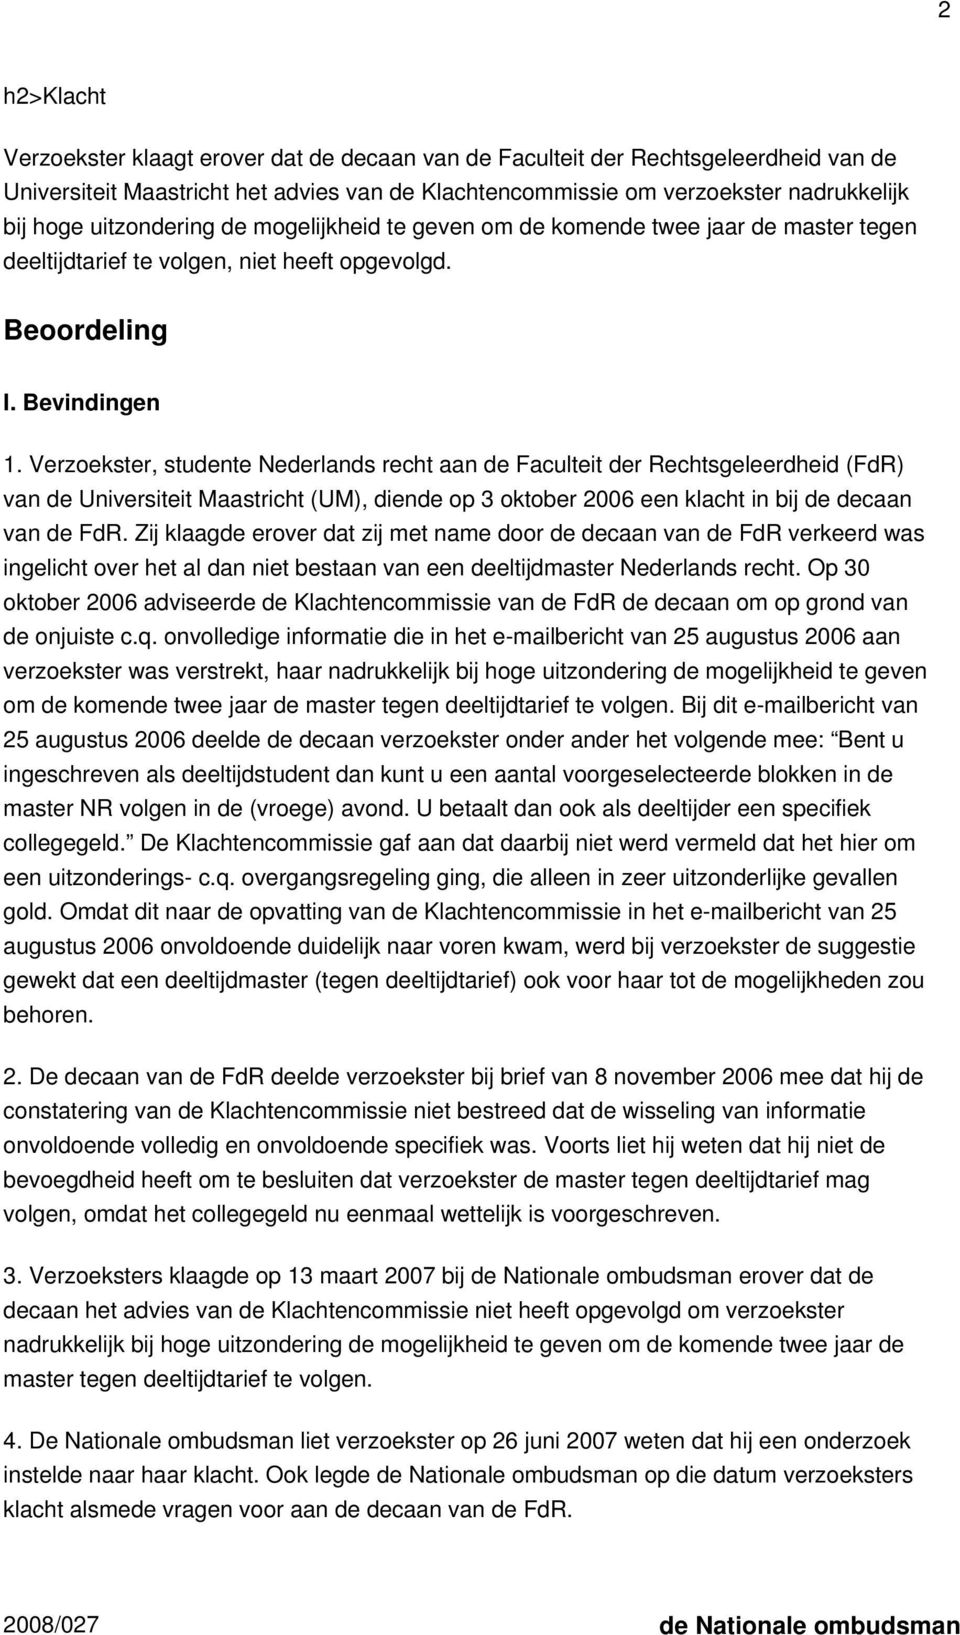 Verzoekster, studente Nederlands recht aan de Faculteit der Rechtsgeleerdheid (FdR) van de Universiteit Maastricht (UM), diende op 3 oktober 2006 een klacht in bij de decaan van de FdR.